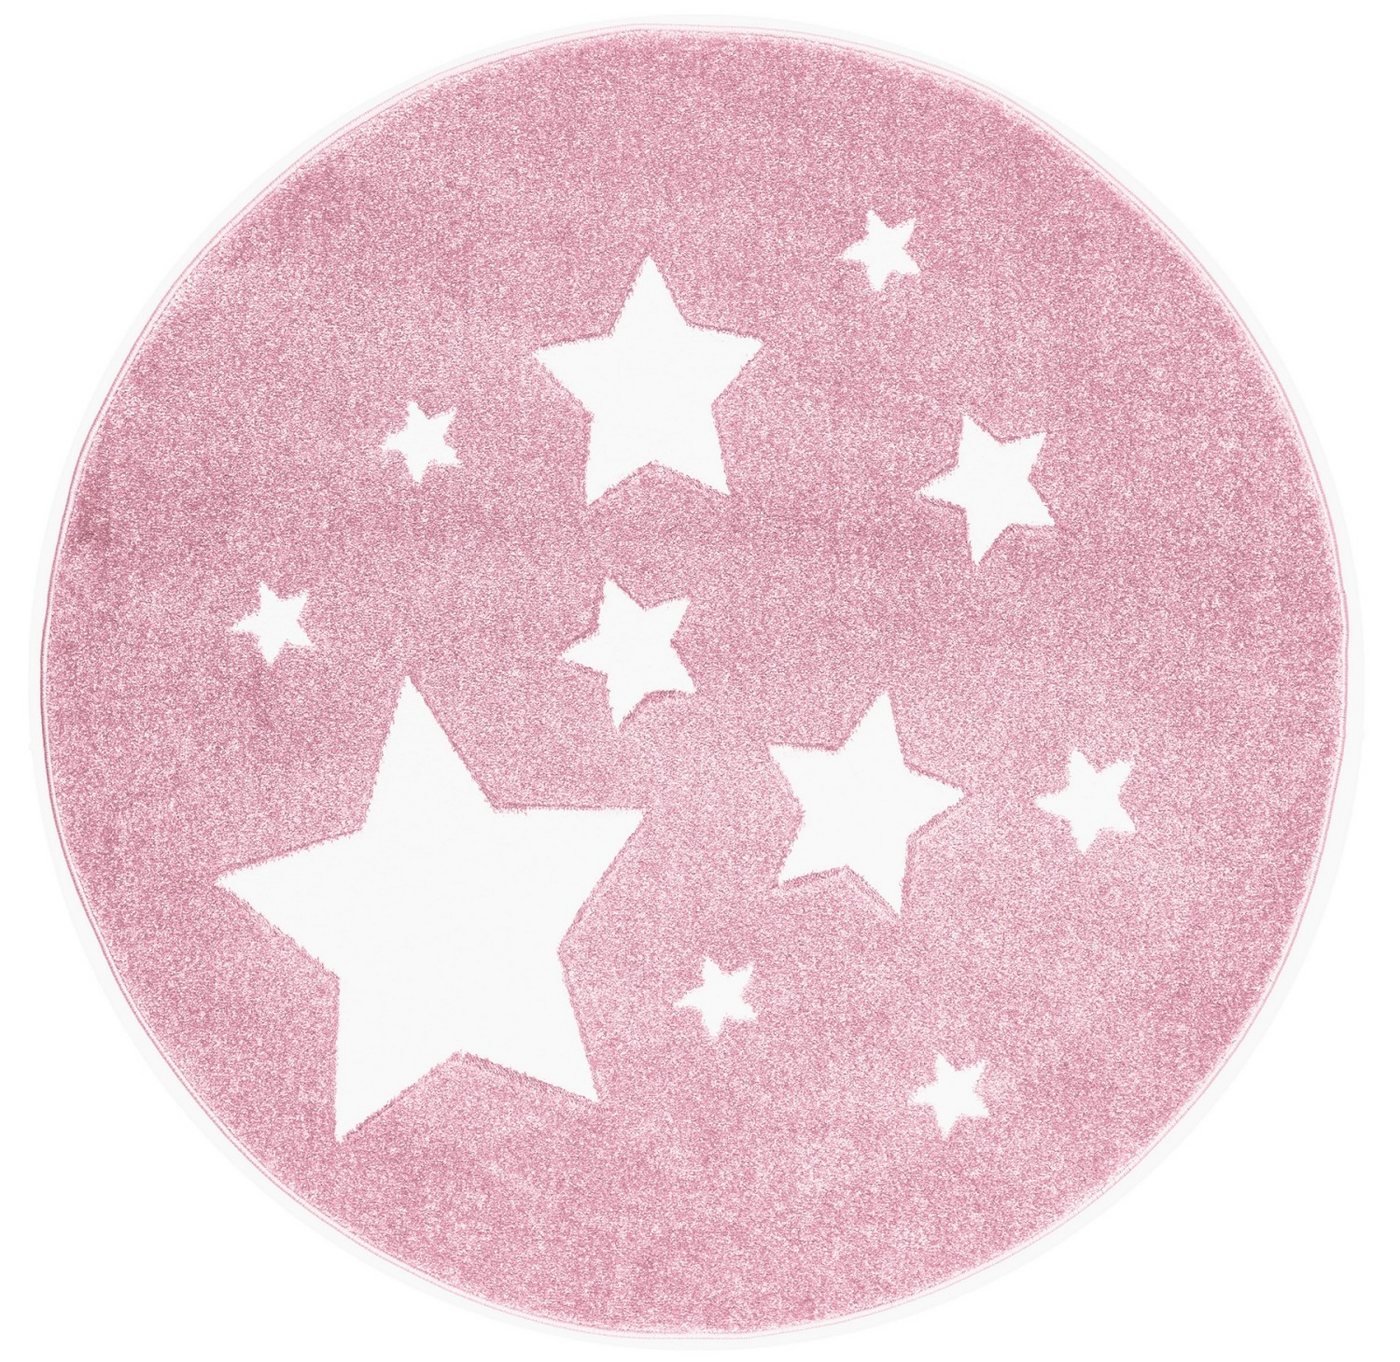 Kinderteppich Spielteppich, Sterne rosa, rund, Ø 133 cm, 18 mm hoch, Scandicliving, rund von Scandicliving